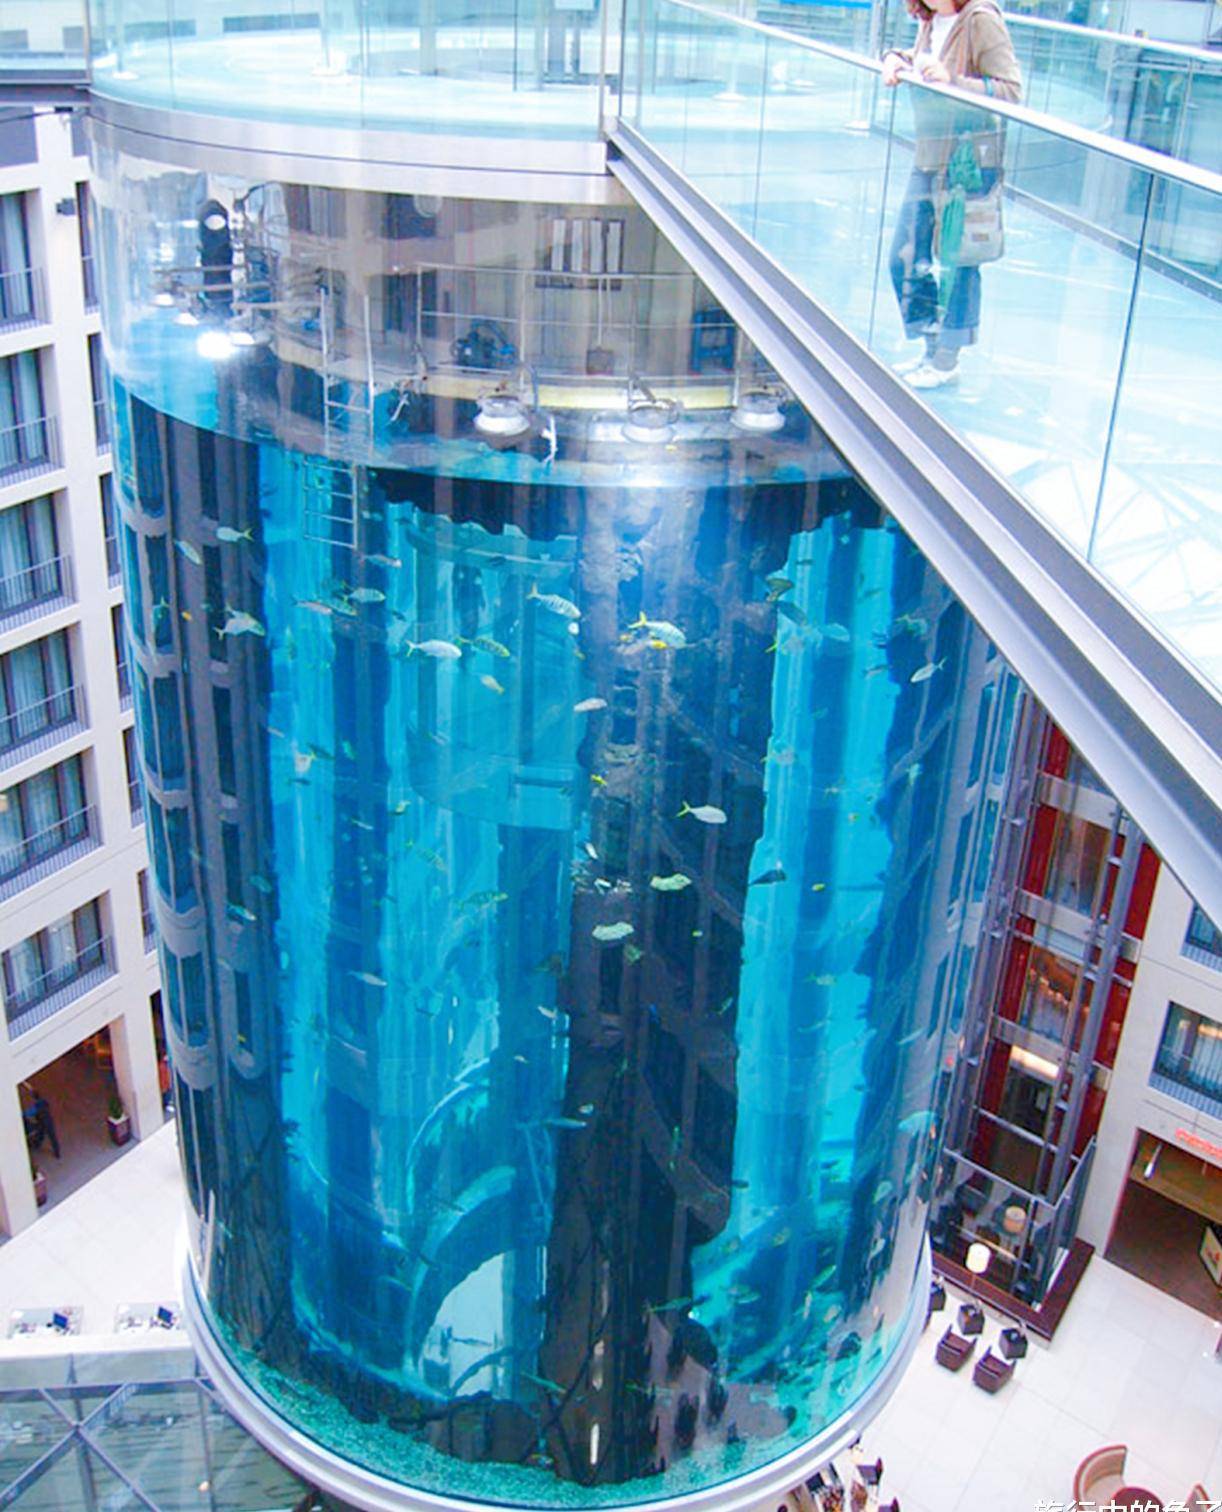 大款花9600万,在酒店里建了个"鱼缸",每年吸引几十万游客参观